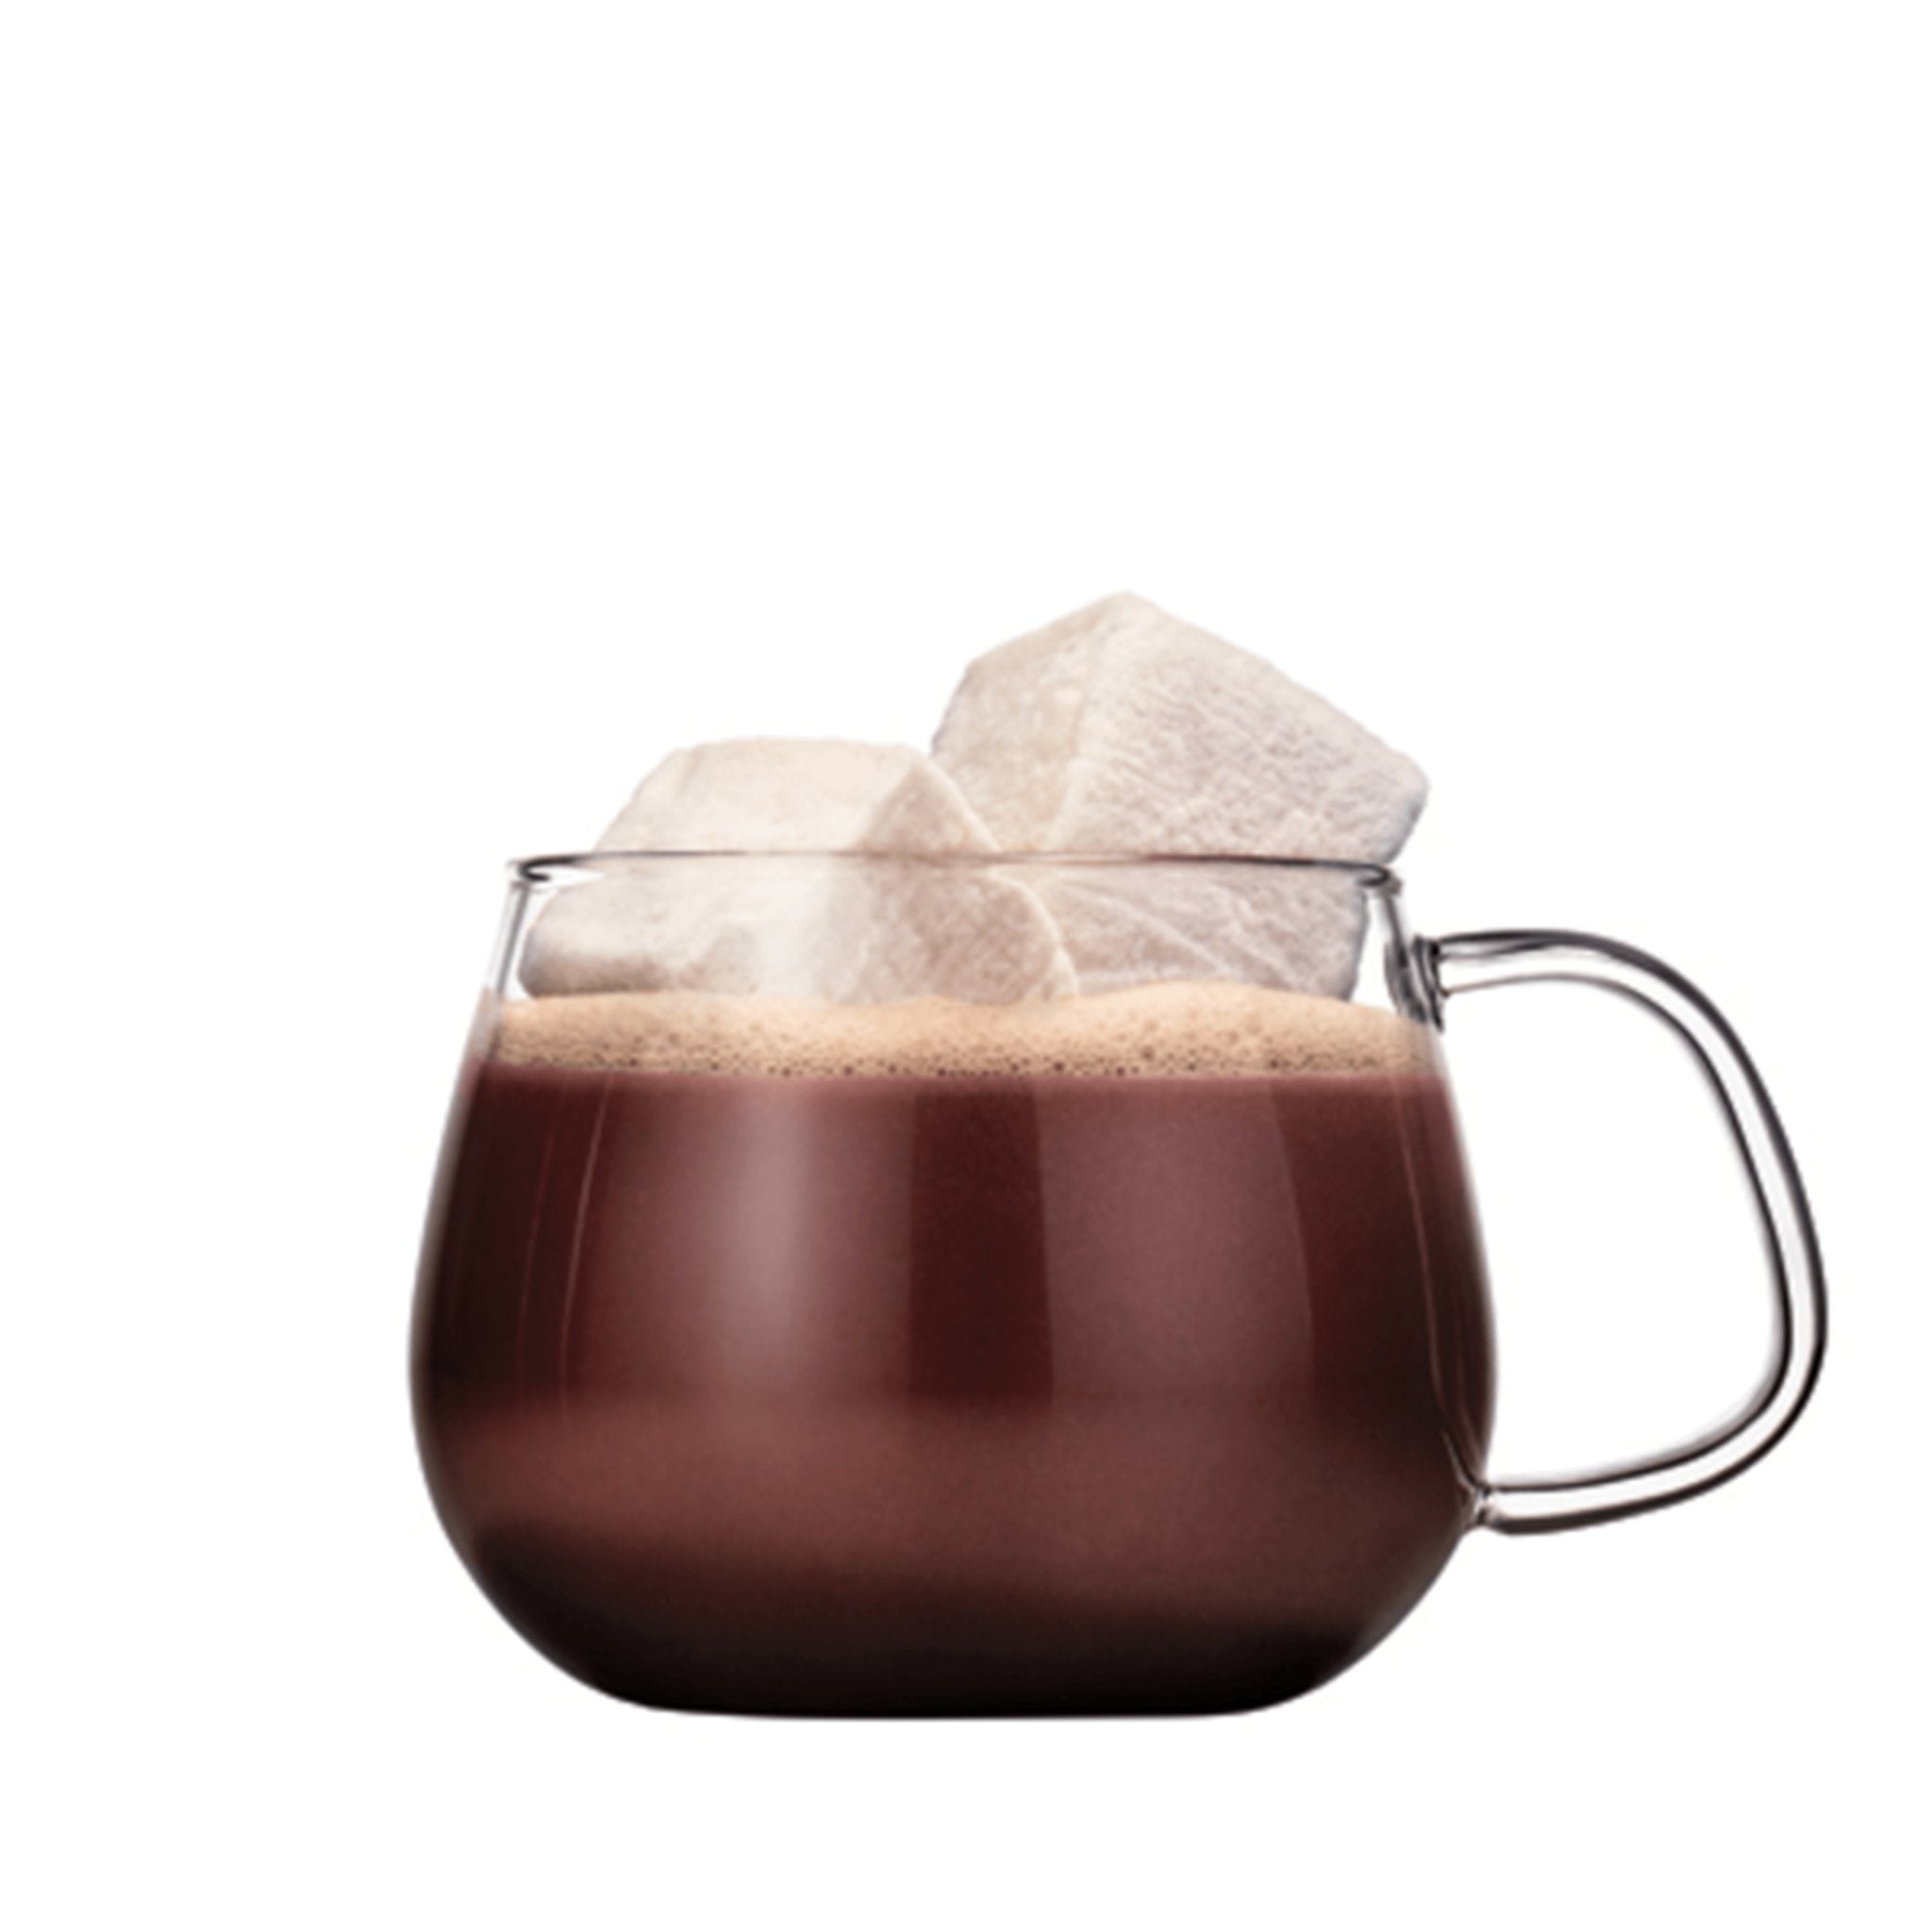 French Vanilla Hot Chocolate - PremiumBottles